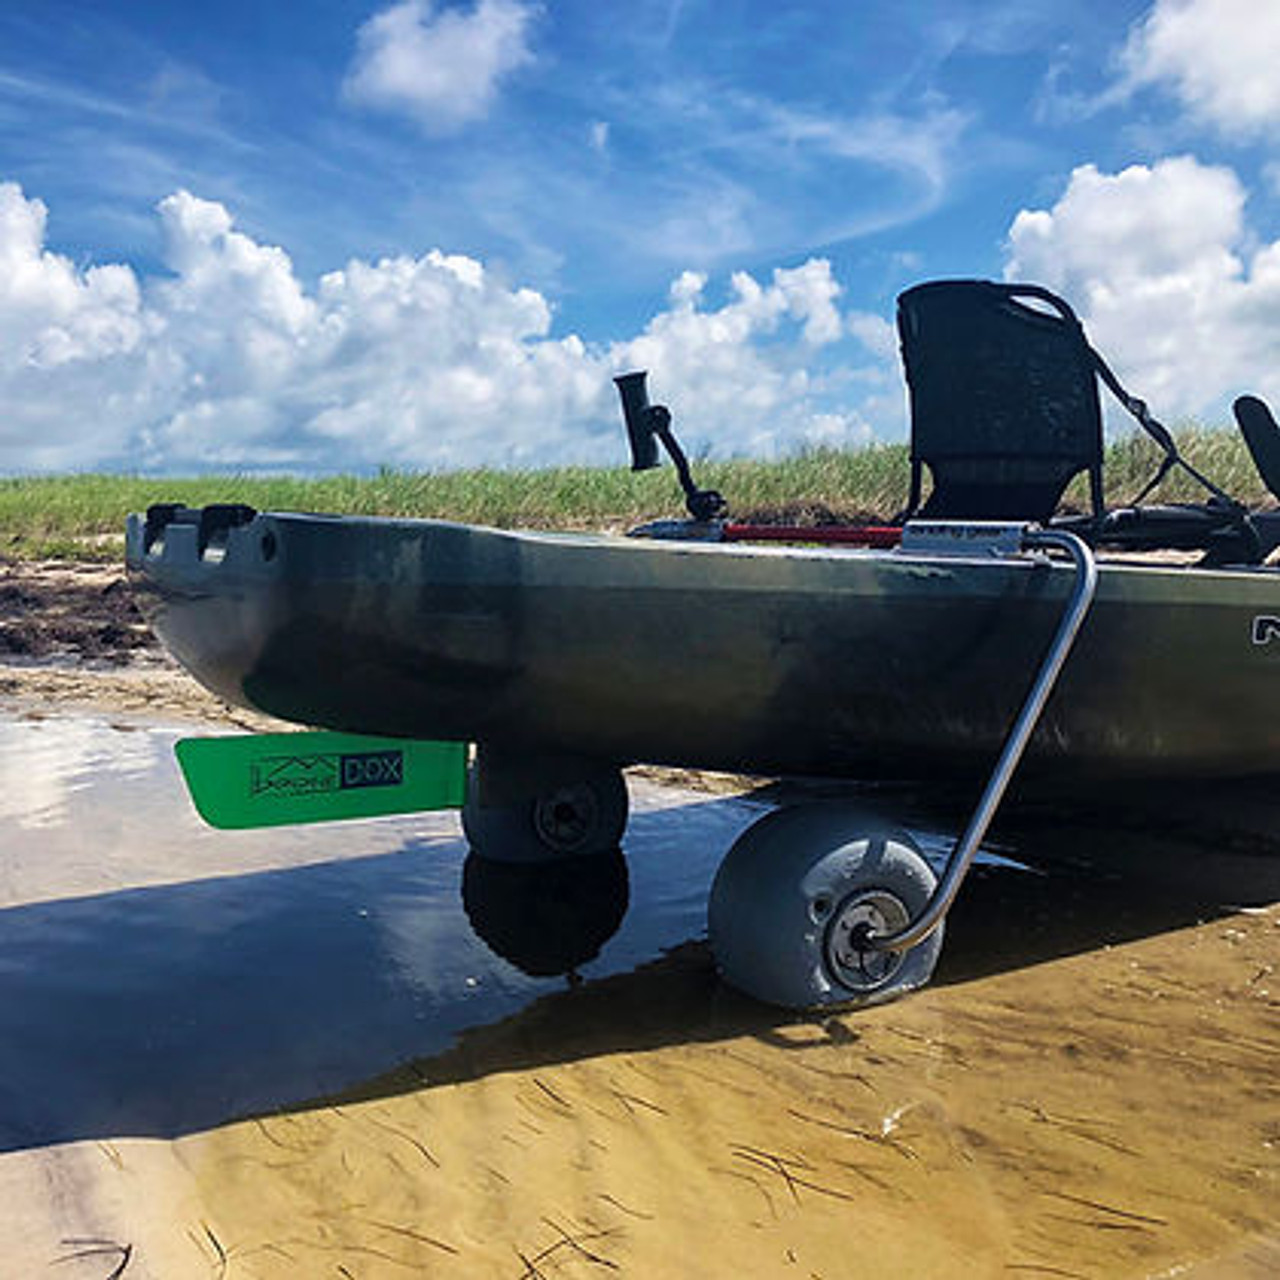 N - Rudder for Native kayaks